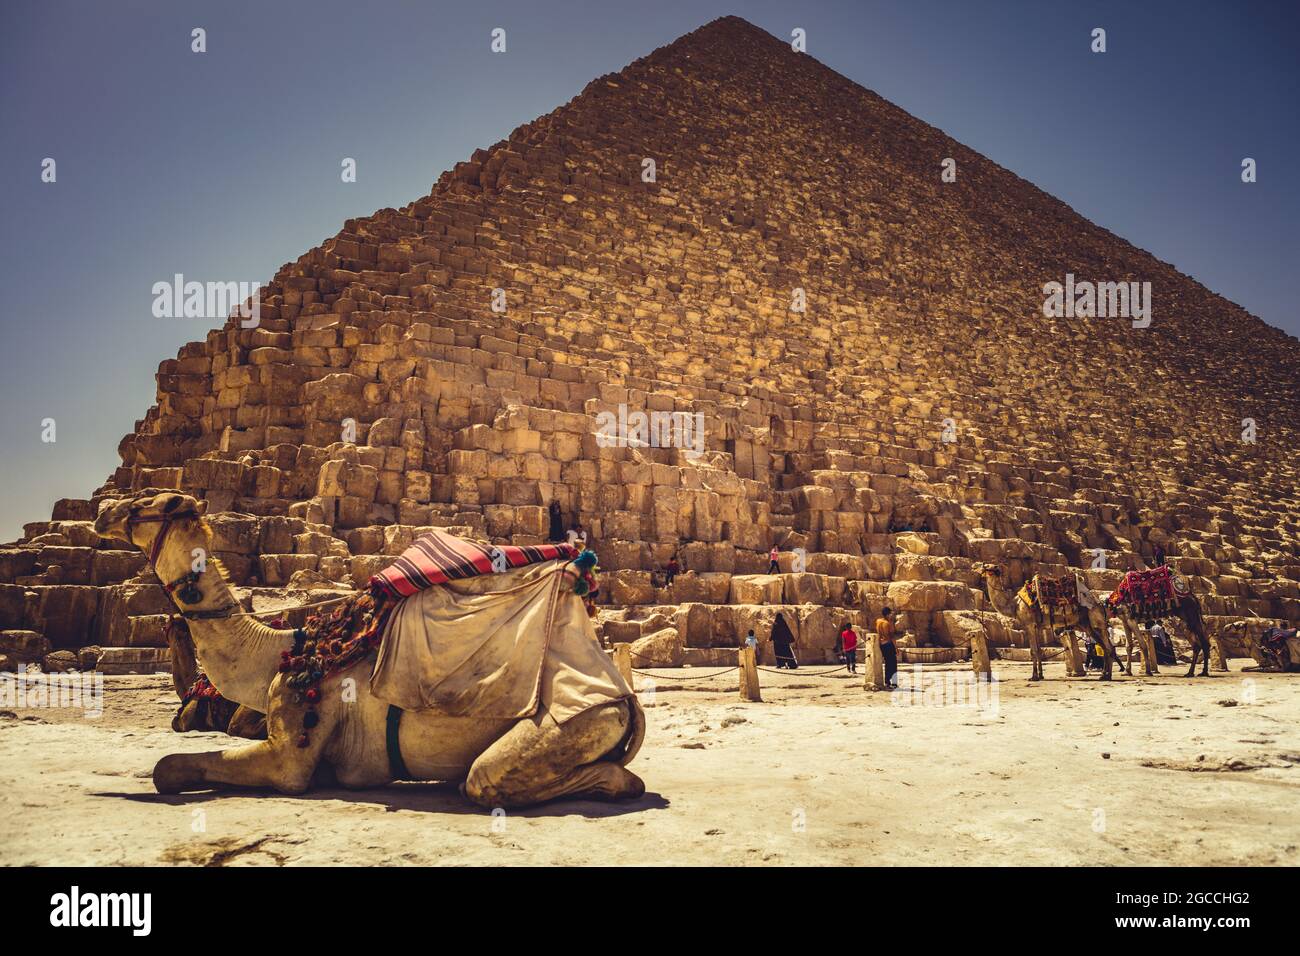 Pyramides de Gizeh Egypte Banque D'Images